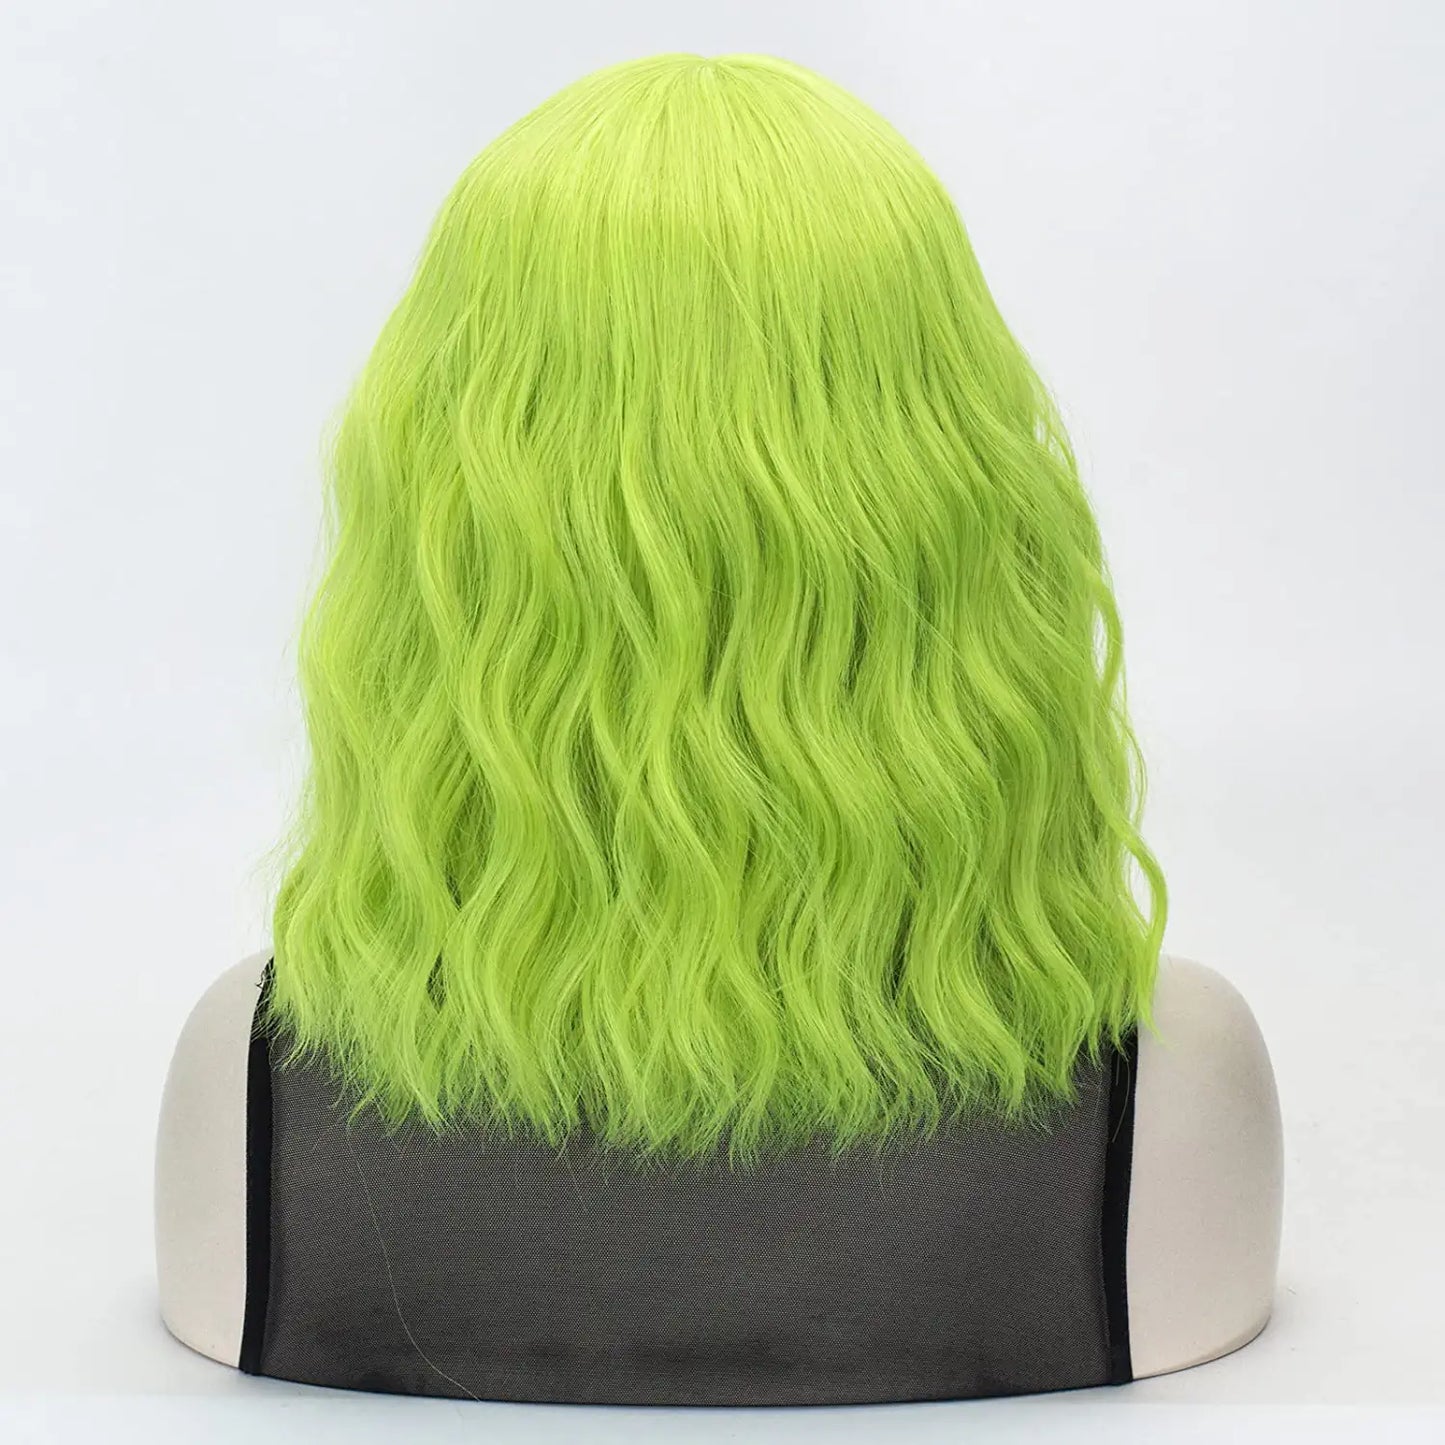 Lime Green Short Bob Wavy Hair Wig with Bangs